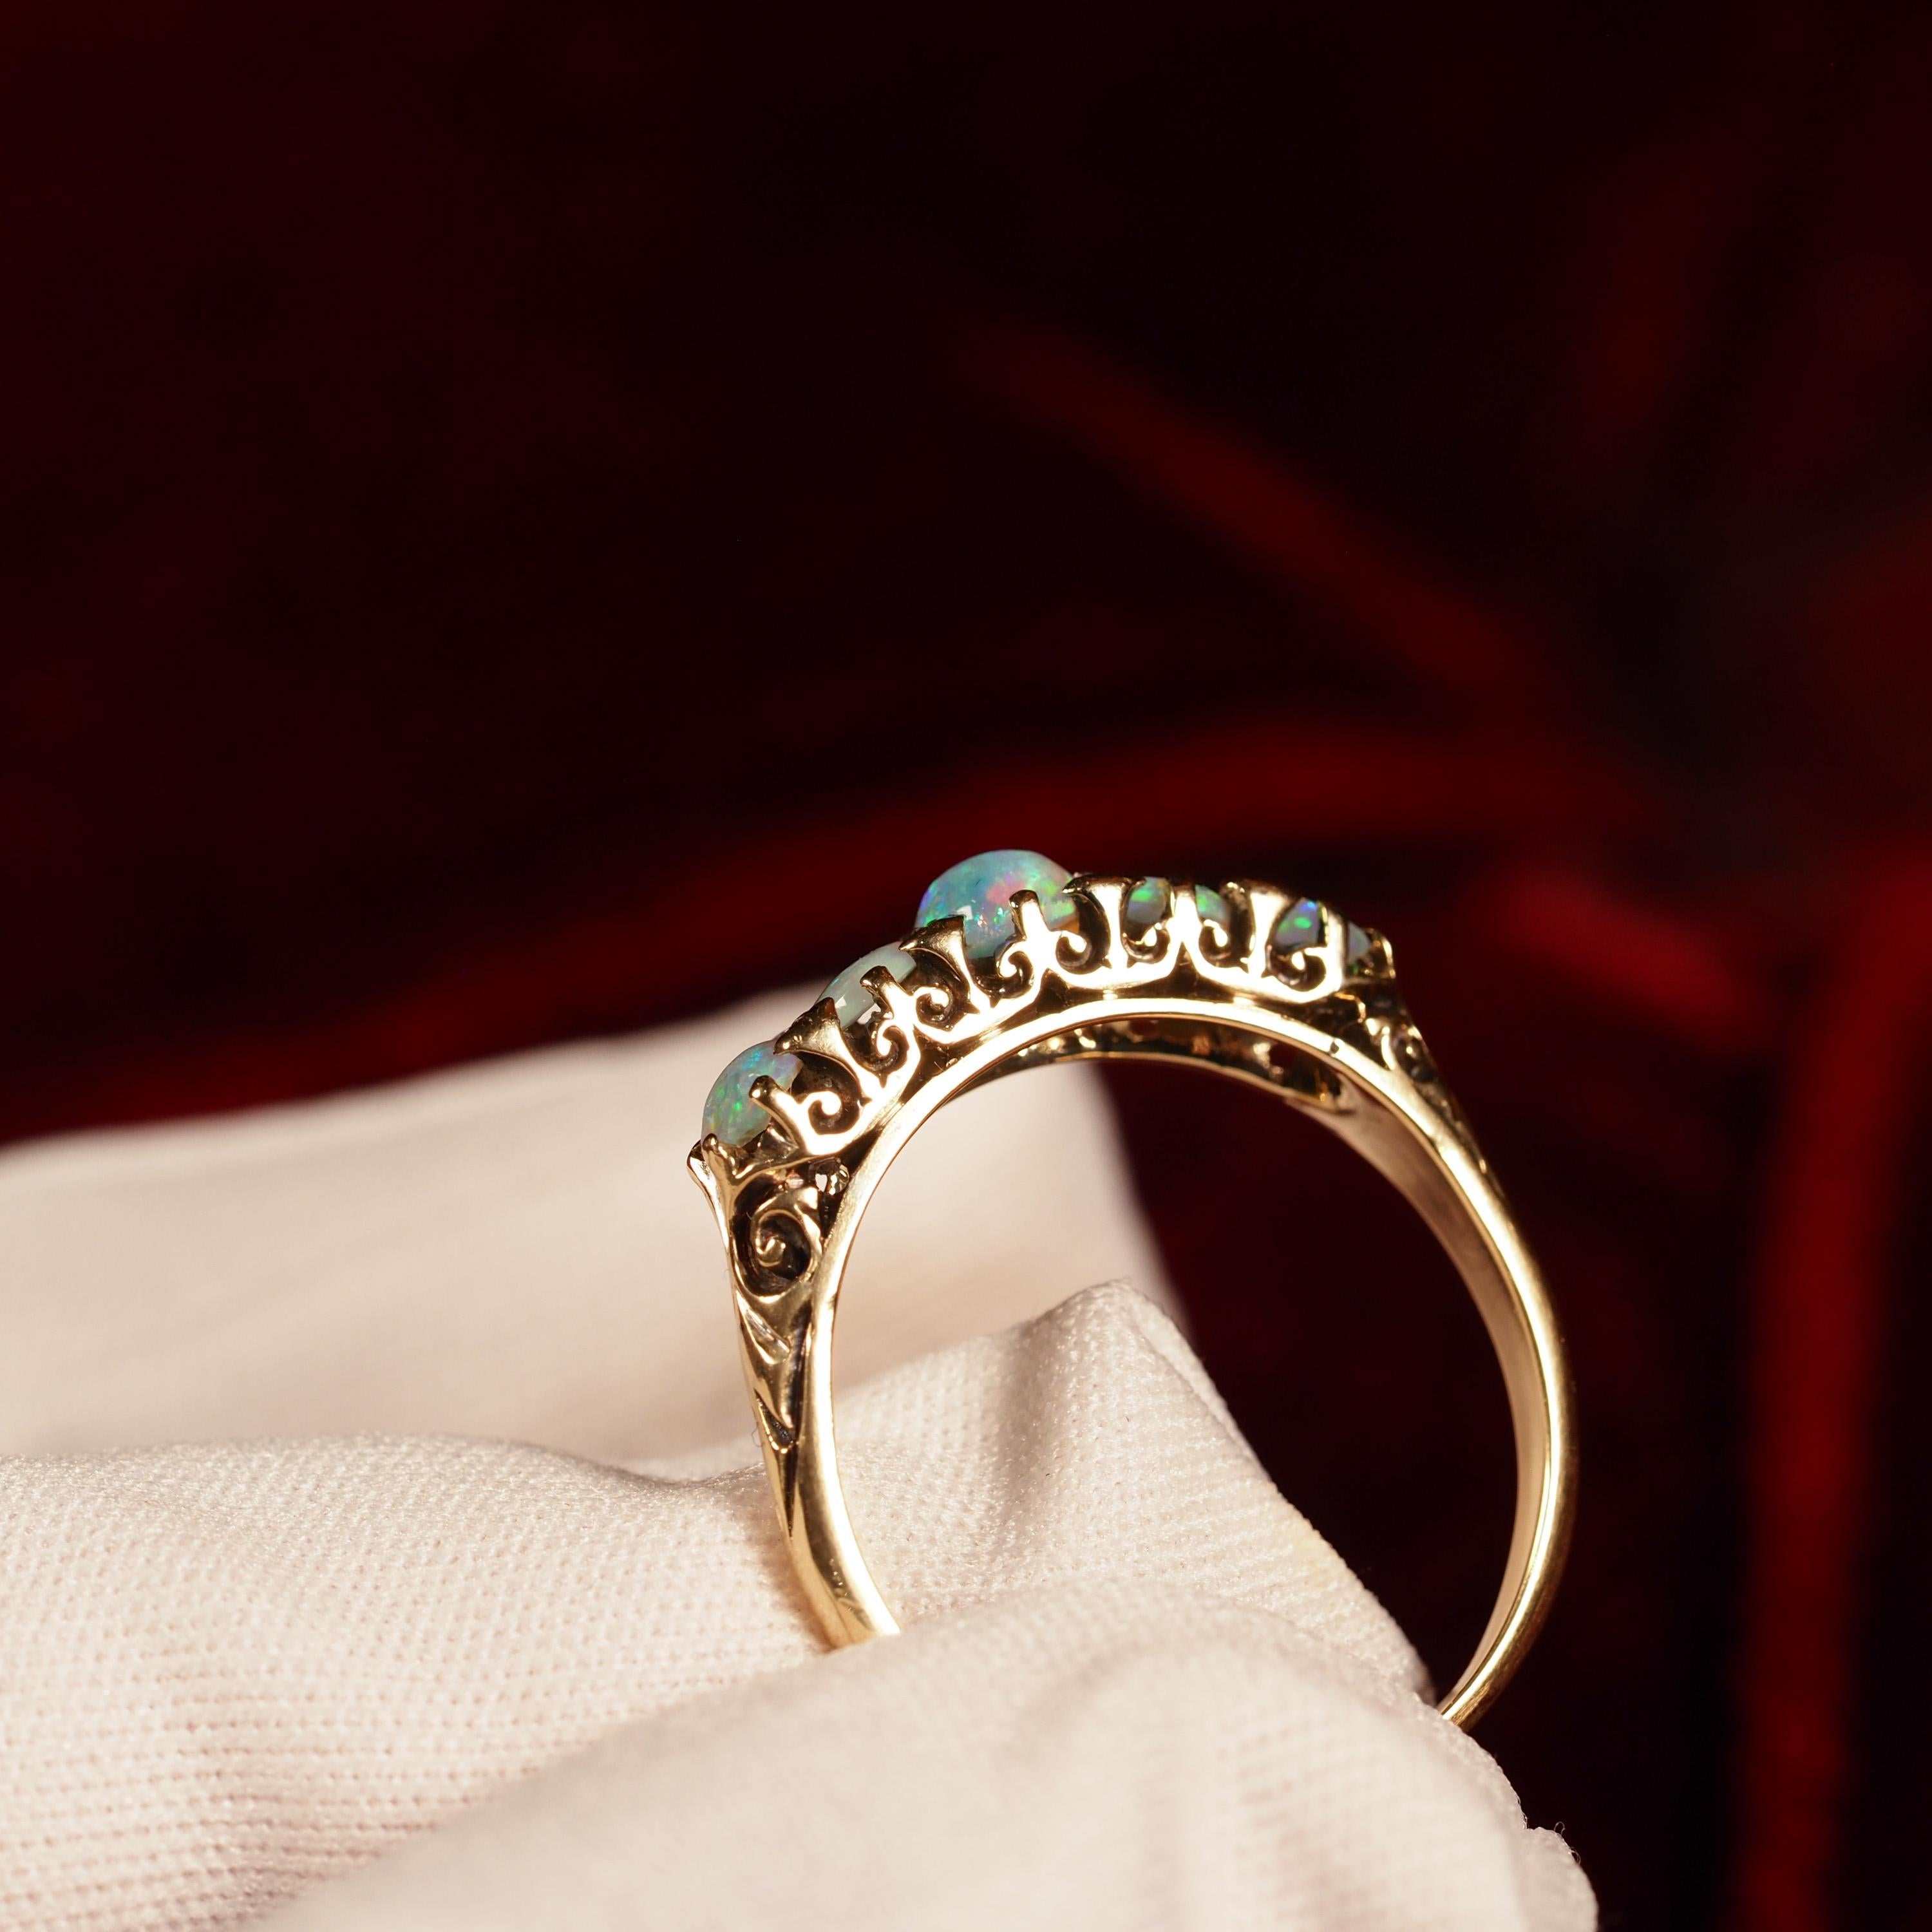 Antique Opal 14K Gold Ring with 5 Cabochons & Fleur-de-lis - Victorian c.1890 13